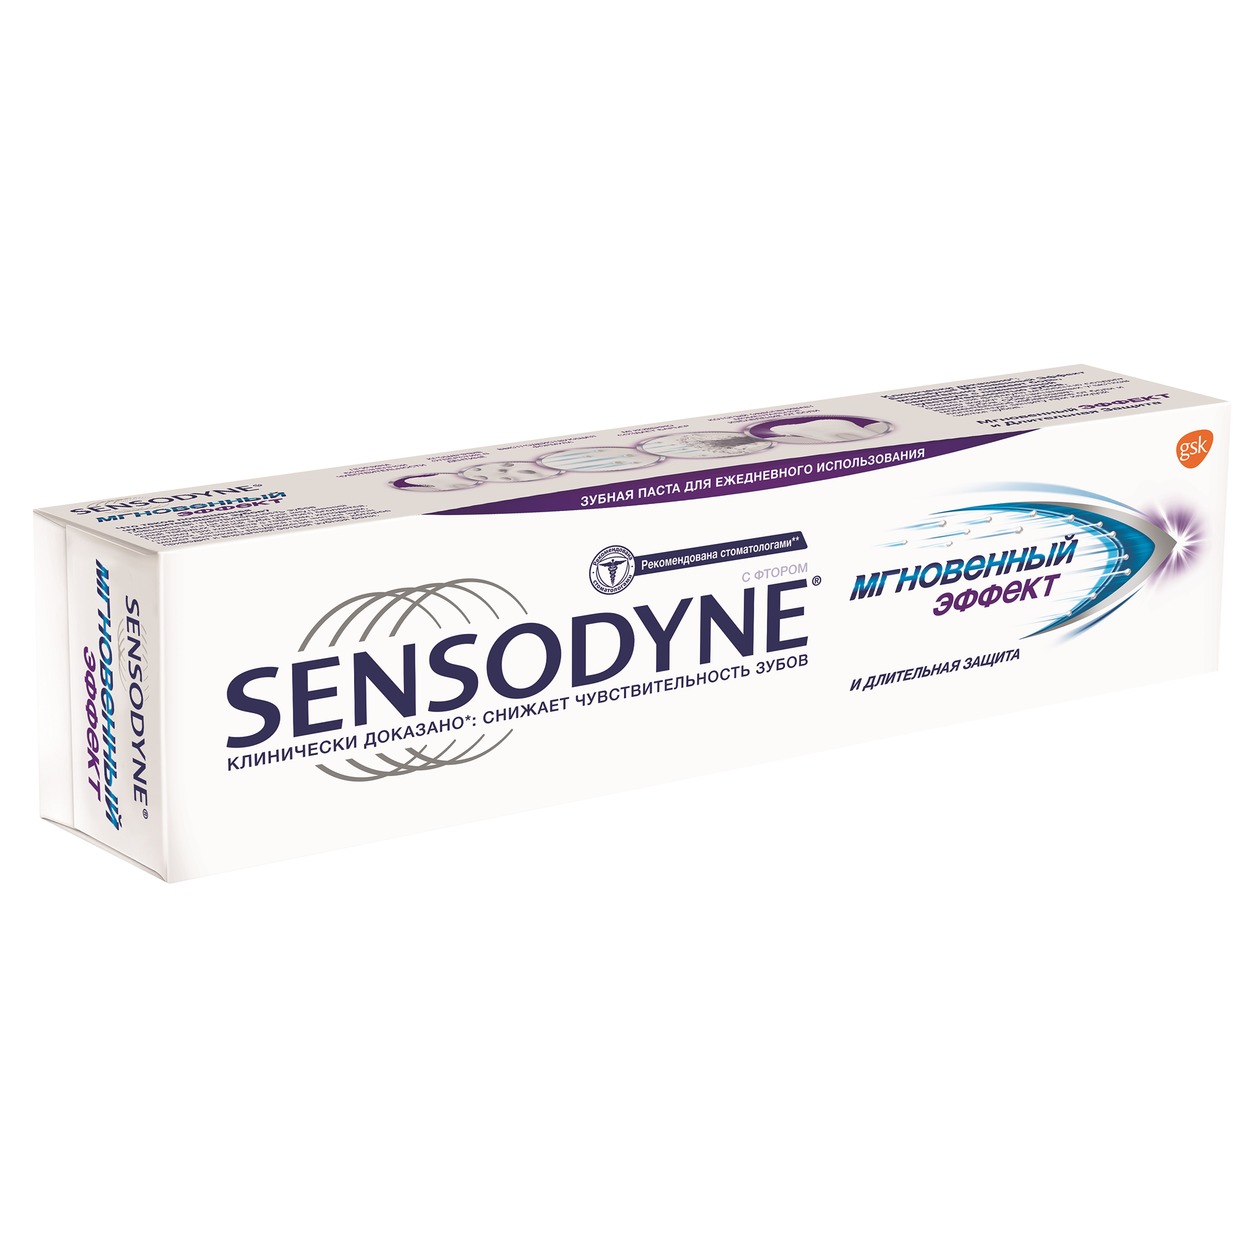 Зубная паста Sensodyne, мгновенный эффект, 75 мл